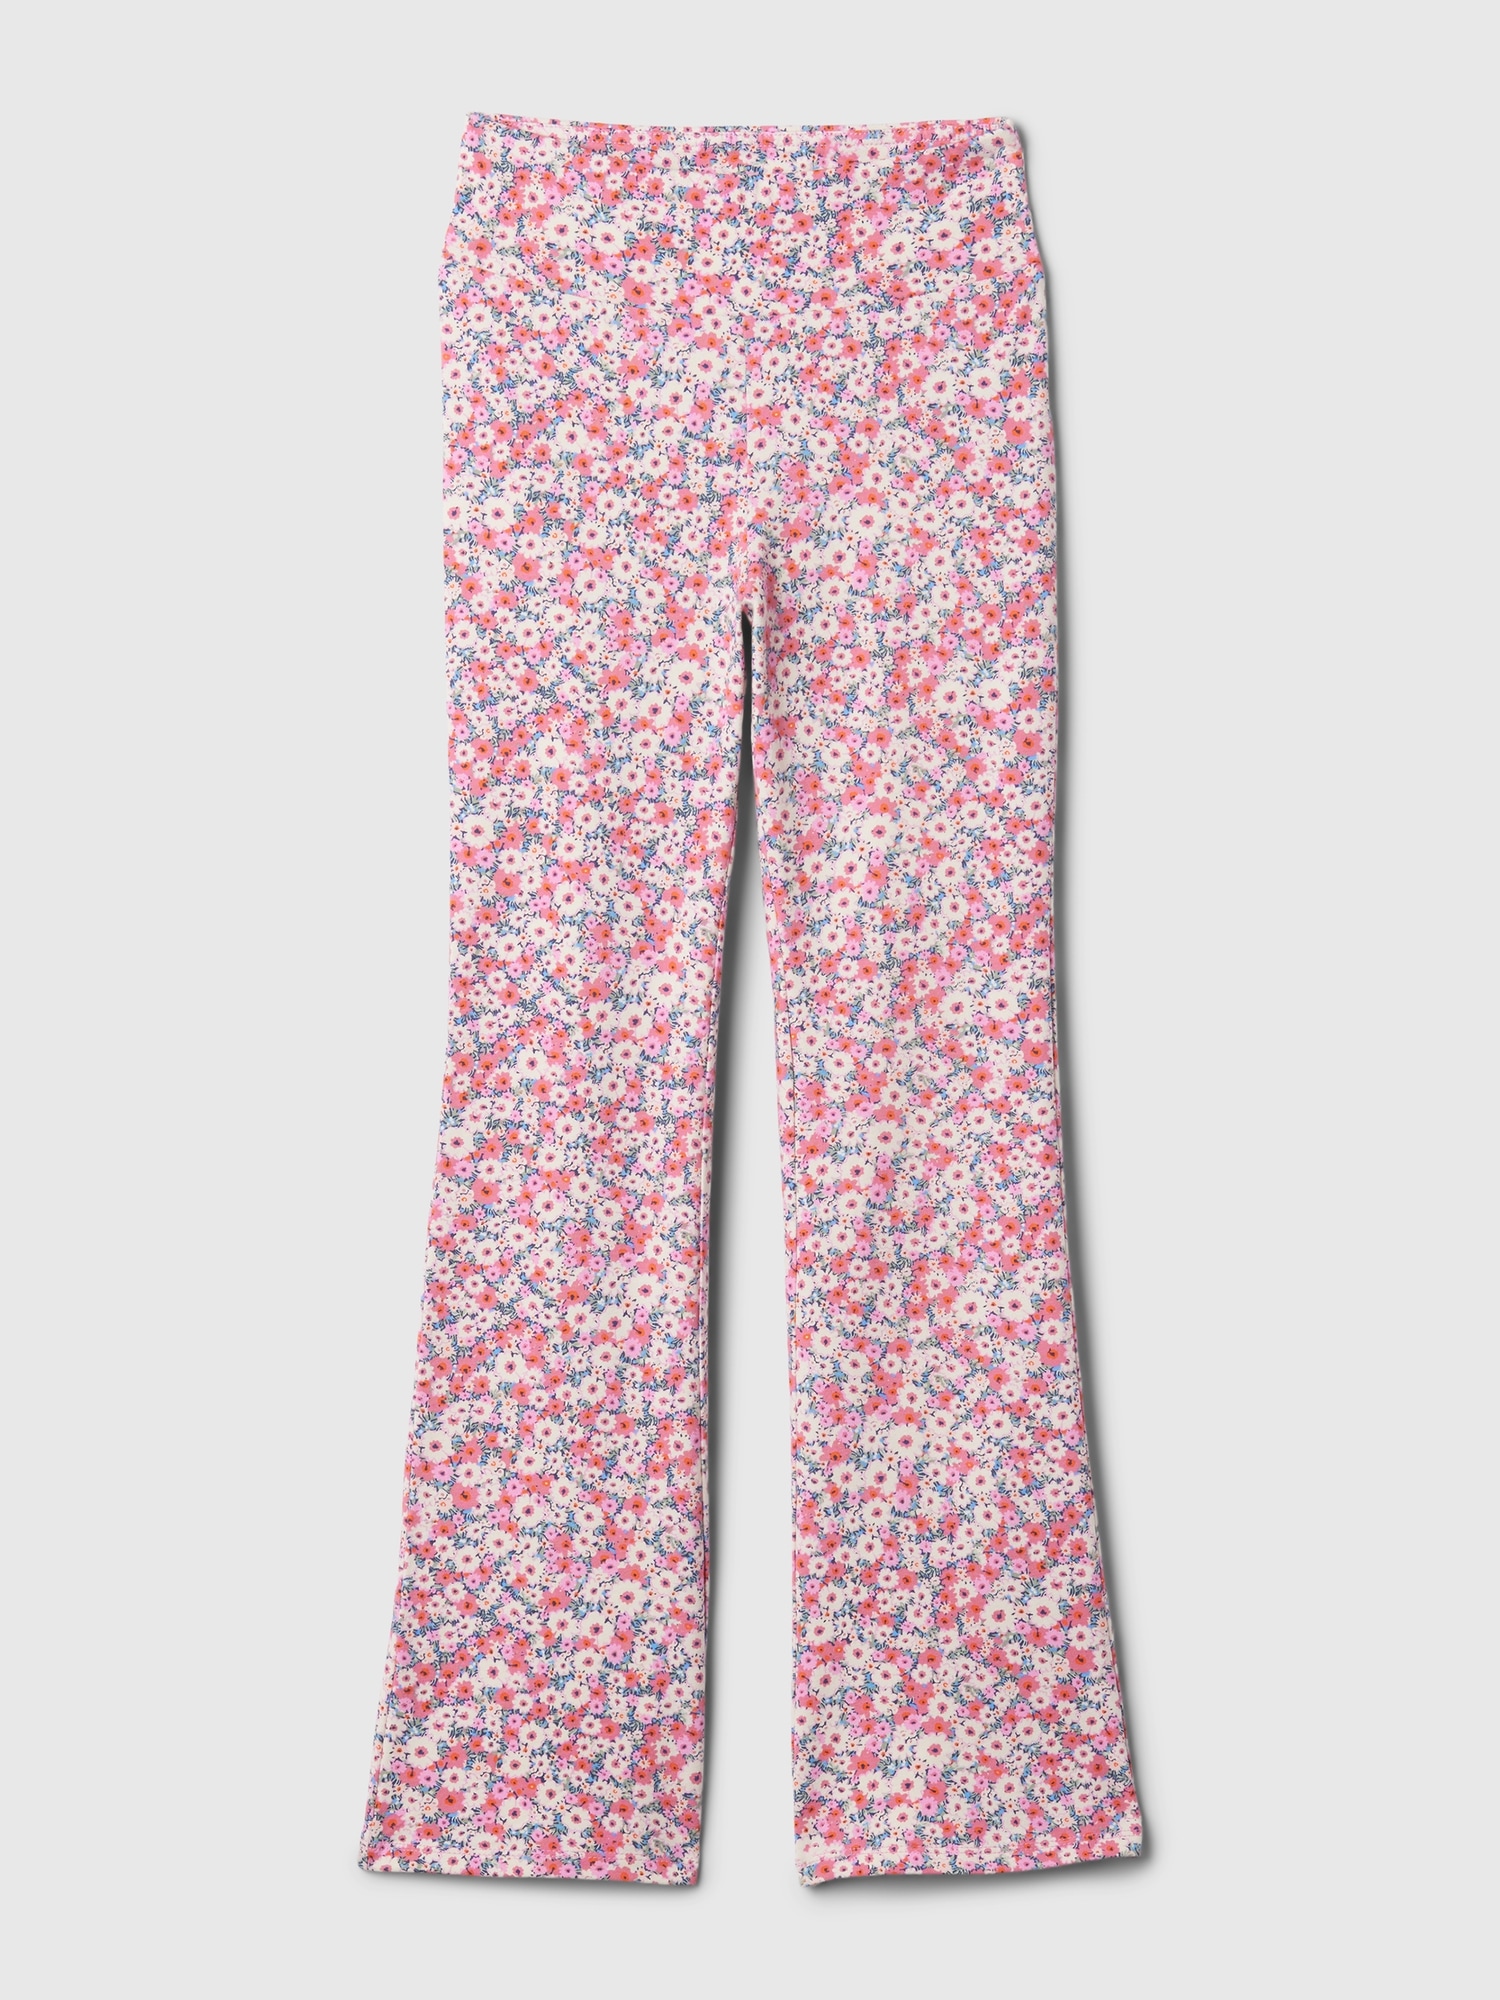 InCity Kids Girls Floral Print Wide Leg Fashion Pants